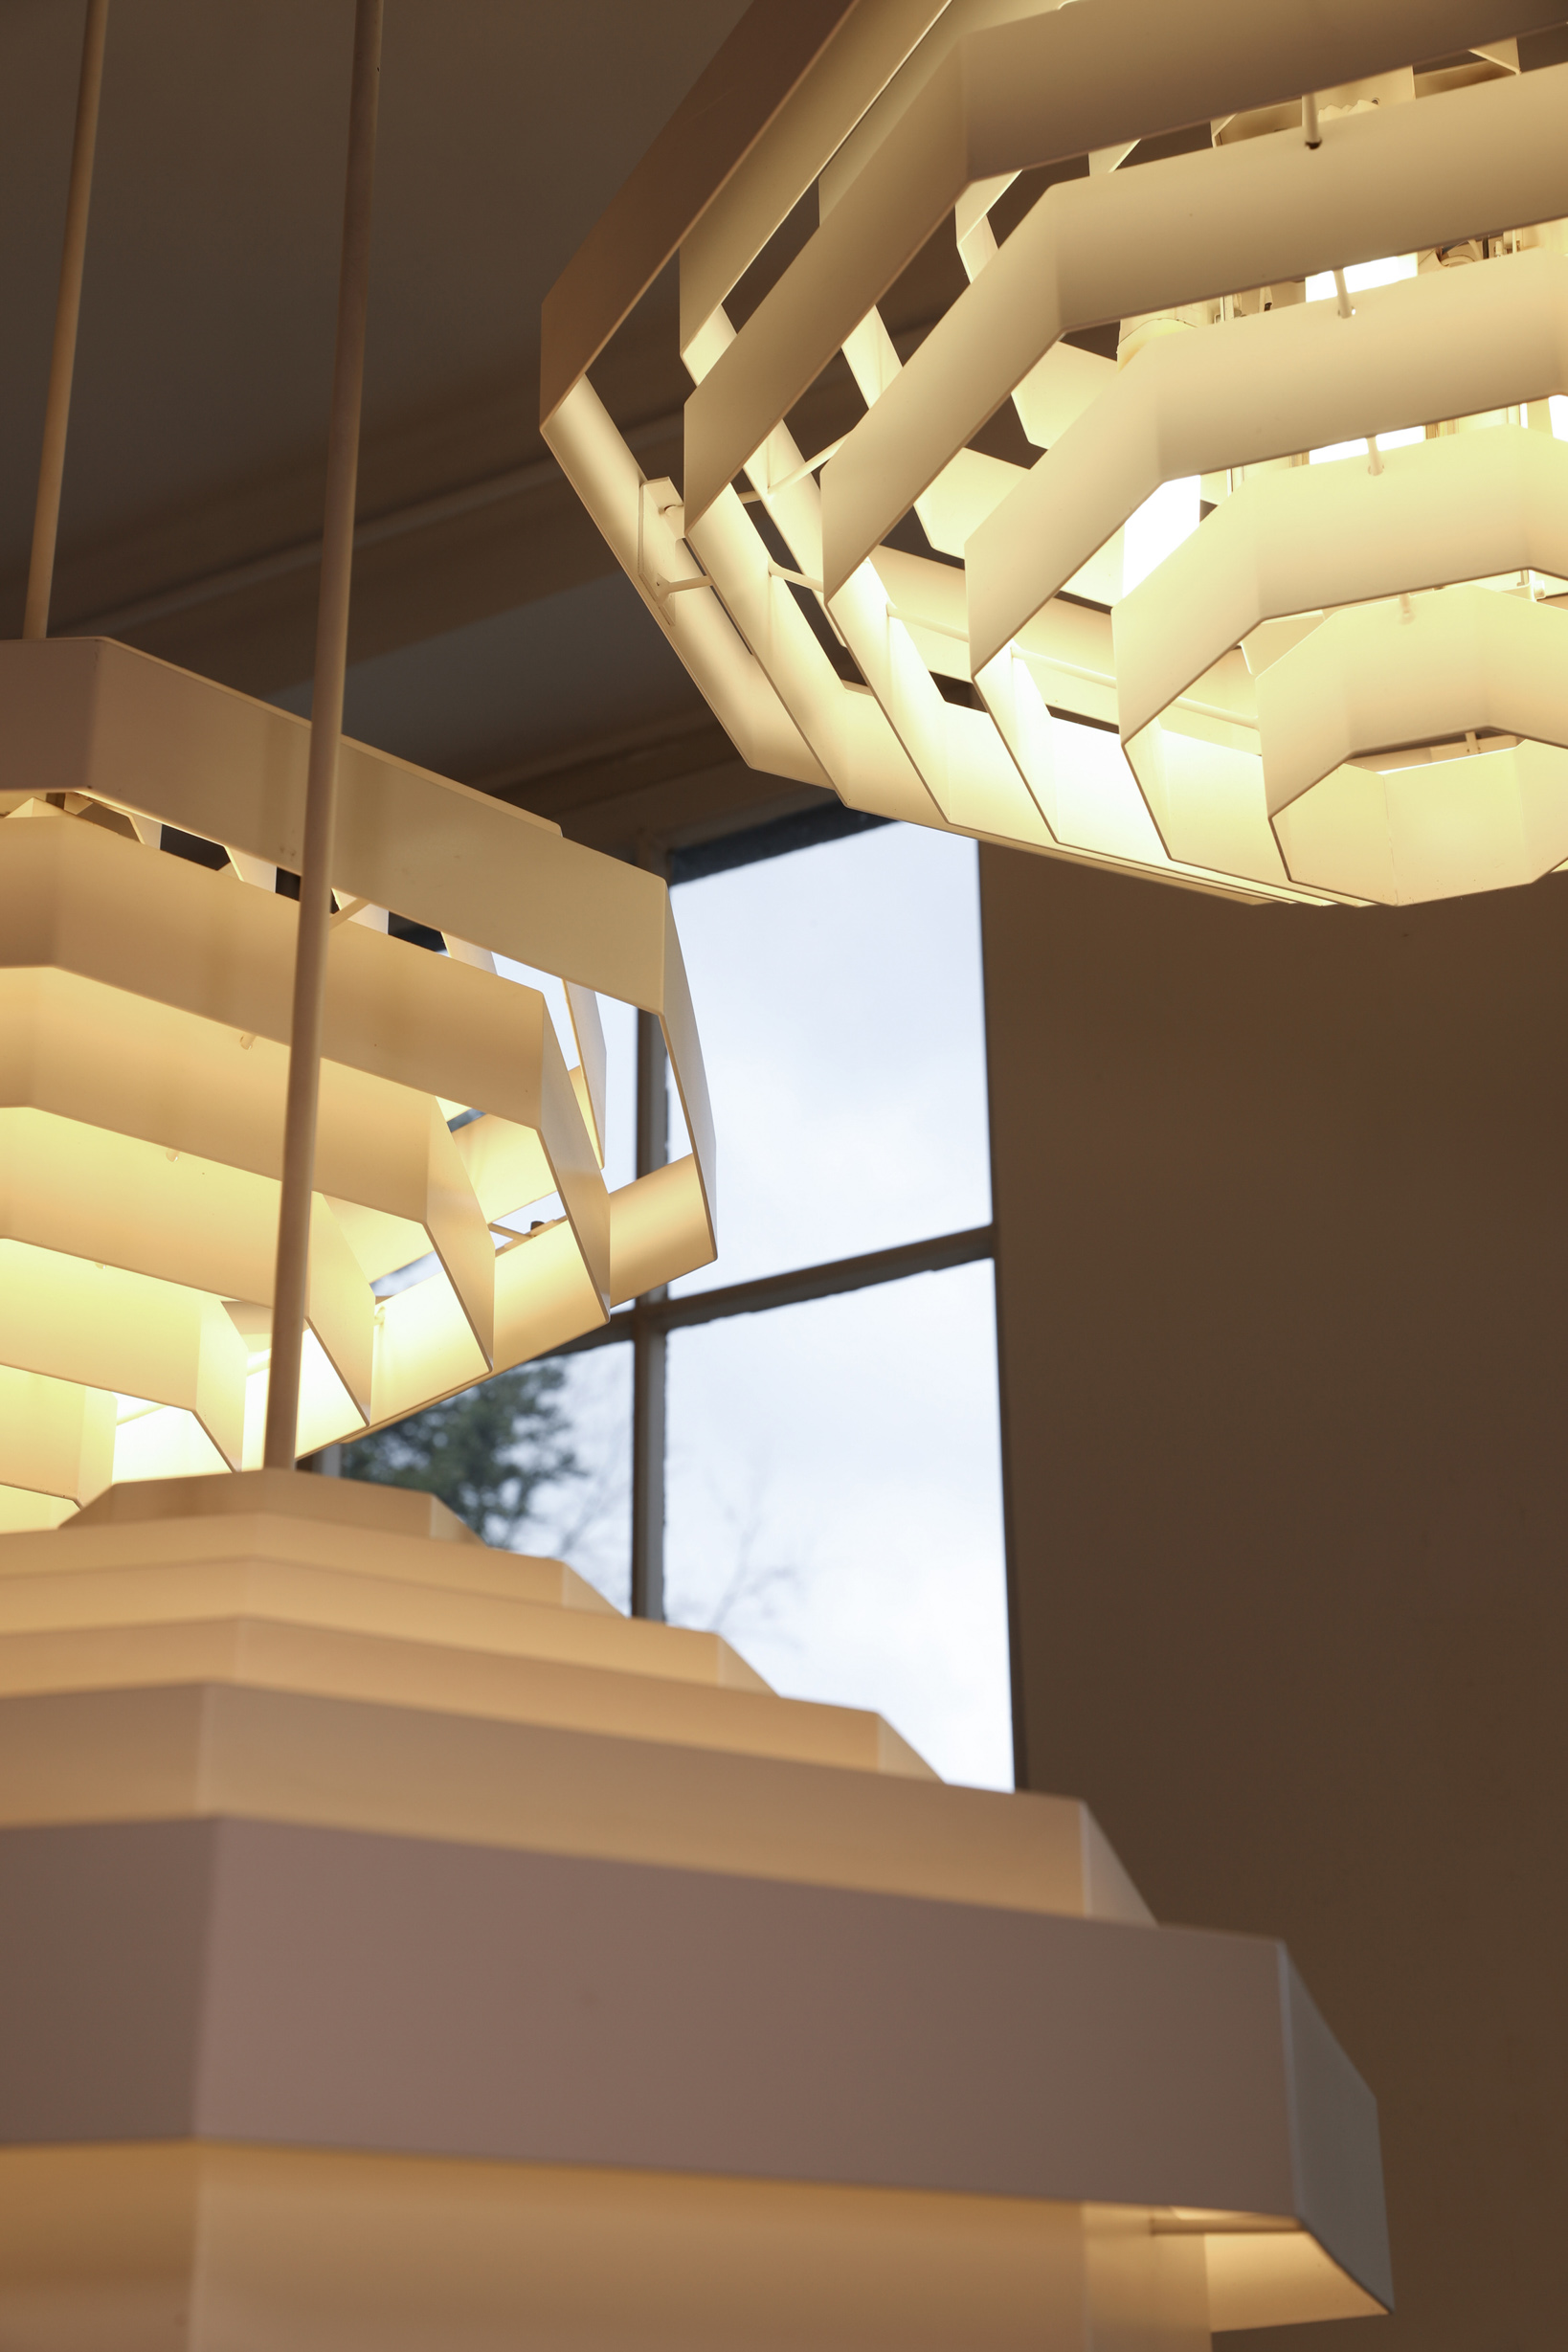 Spectral, 3 large pendant lamps/slat lights, model Octaform - Image 2 of 2